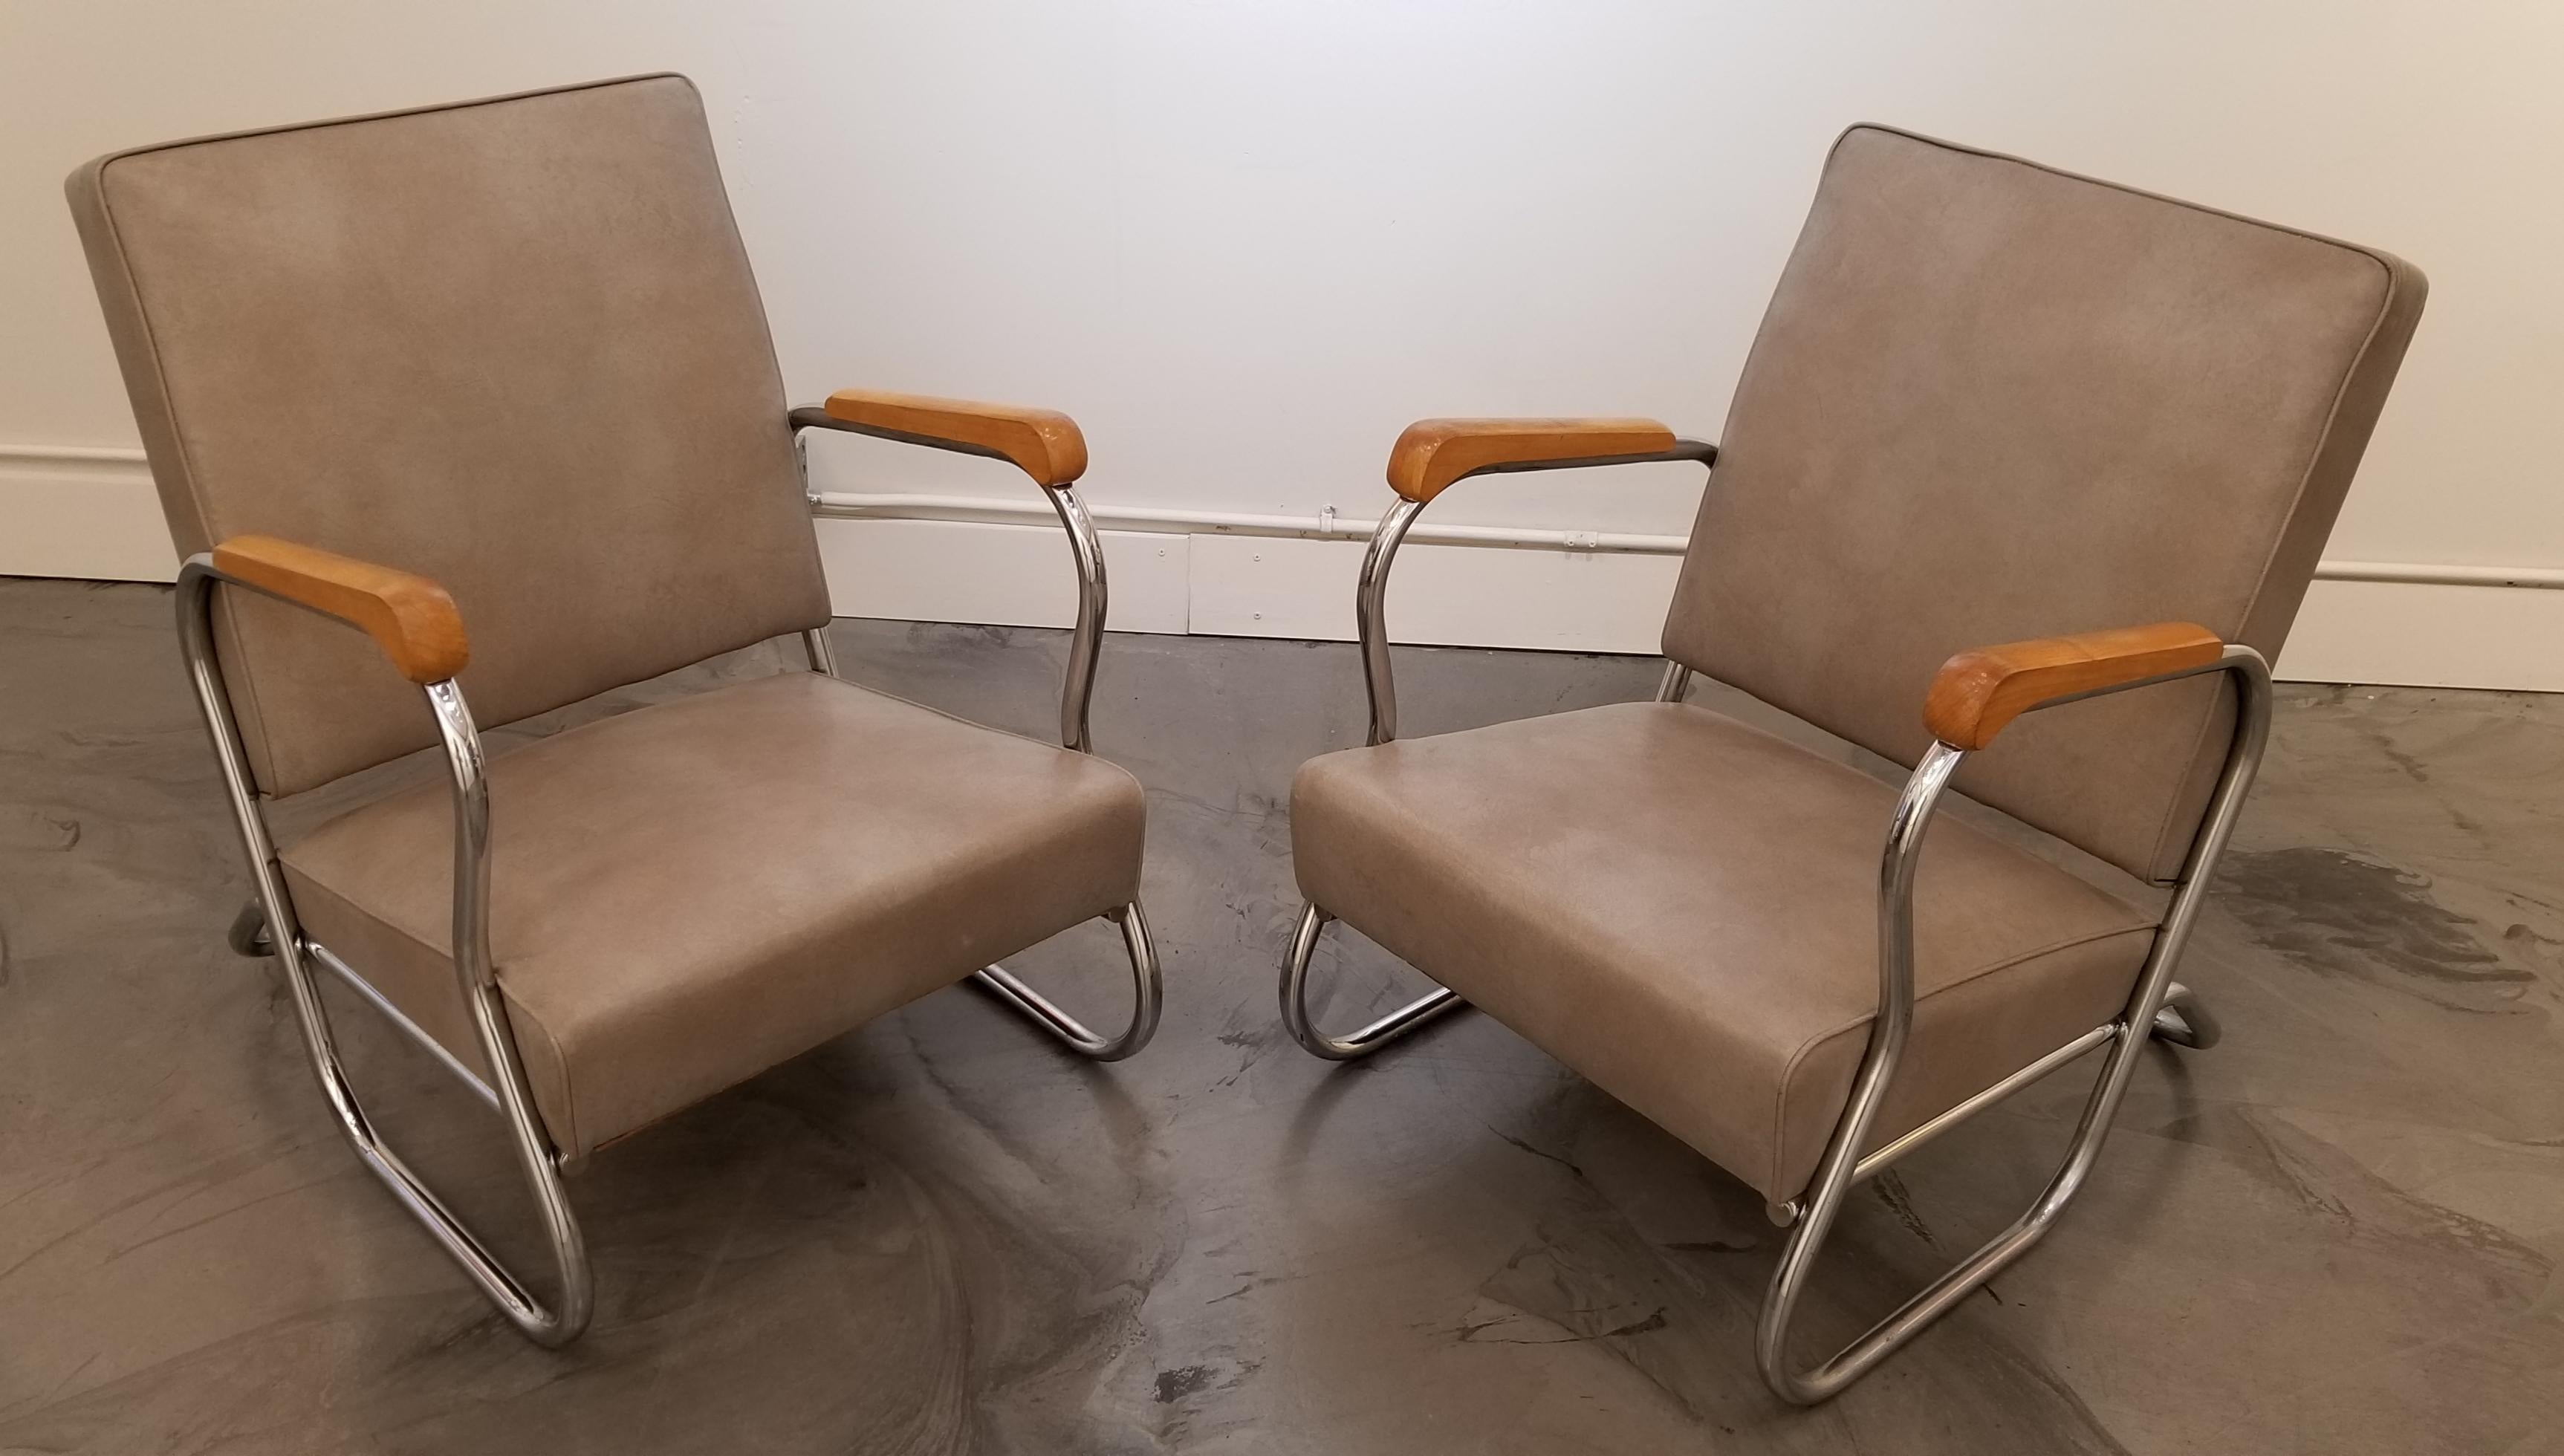 1930s Industrial Modern Chrome Club Chairs 2